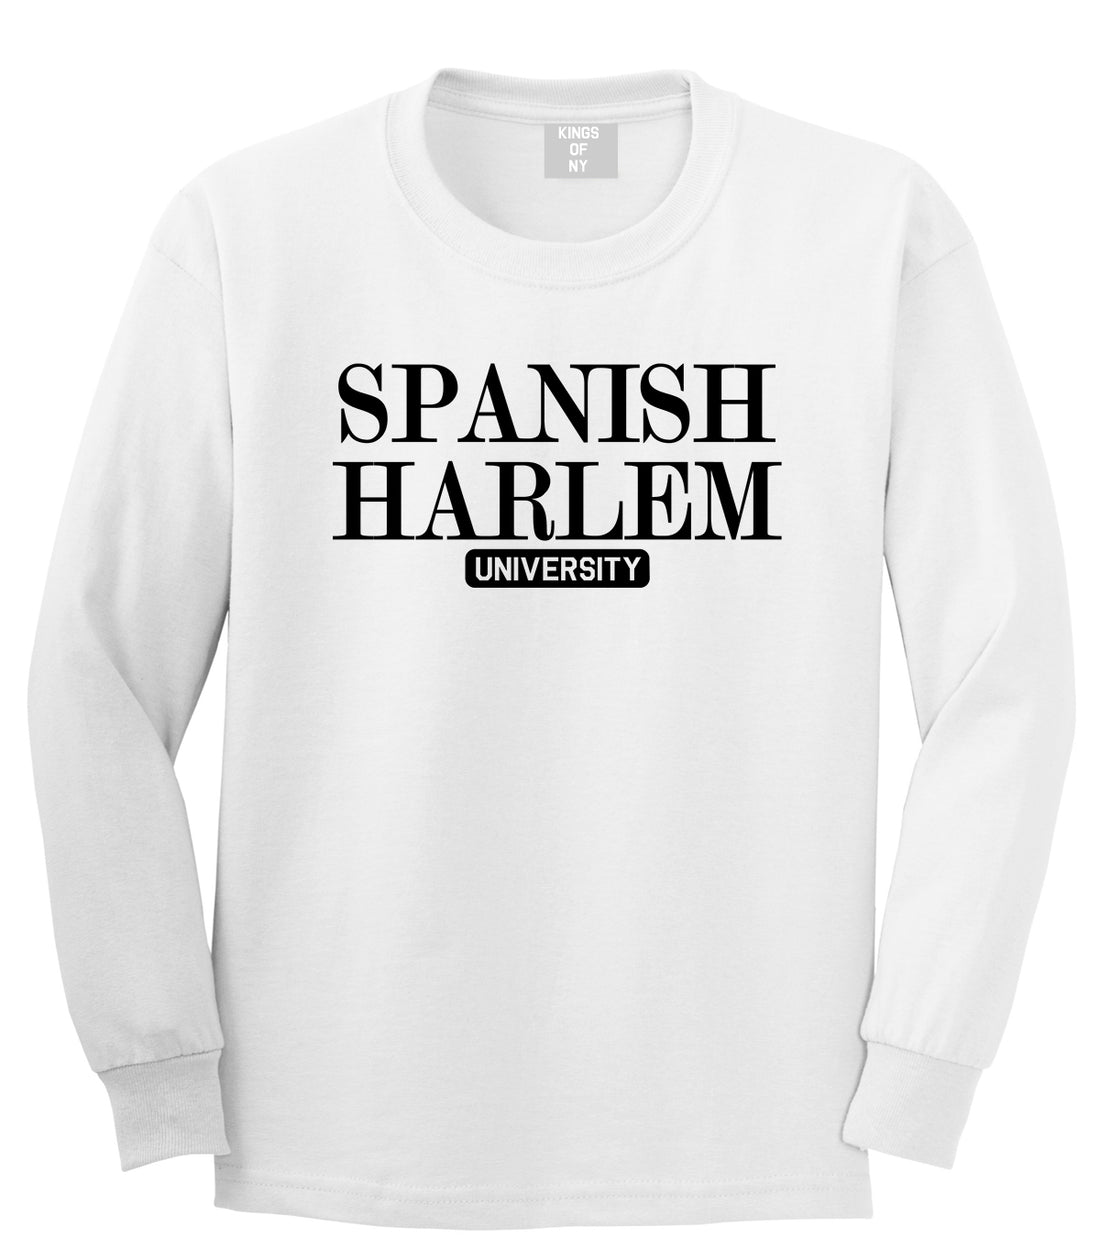 Spanish Harlem University New York Mens Long Sleeve T-Shirt White